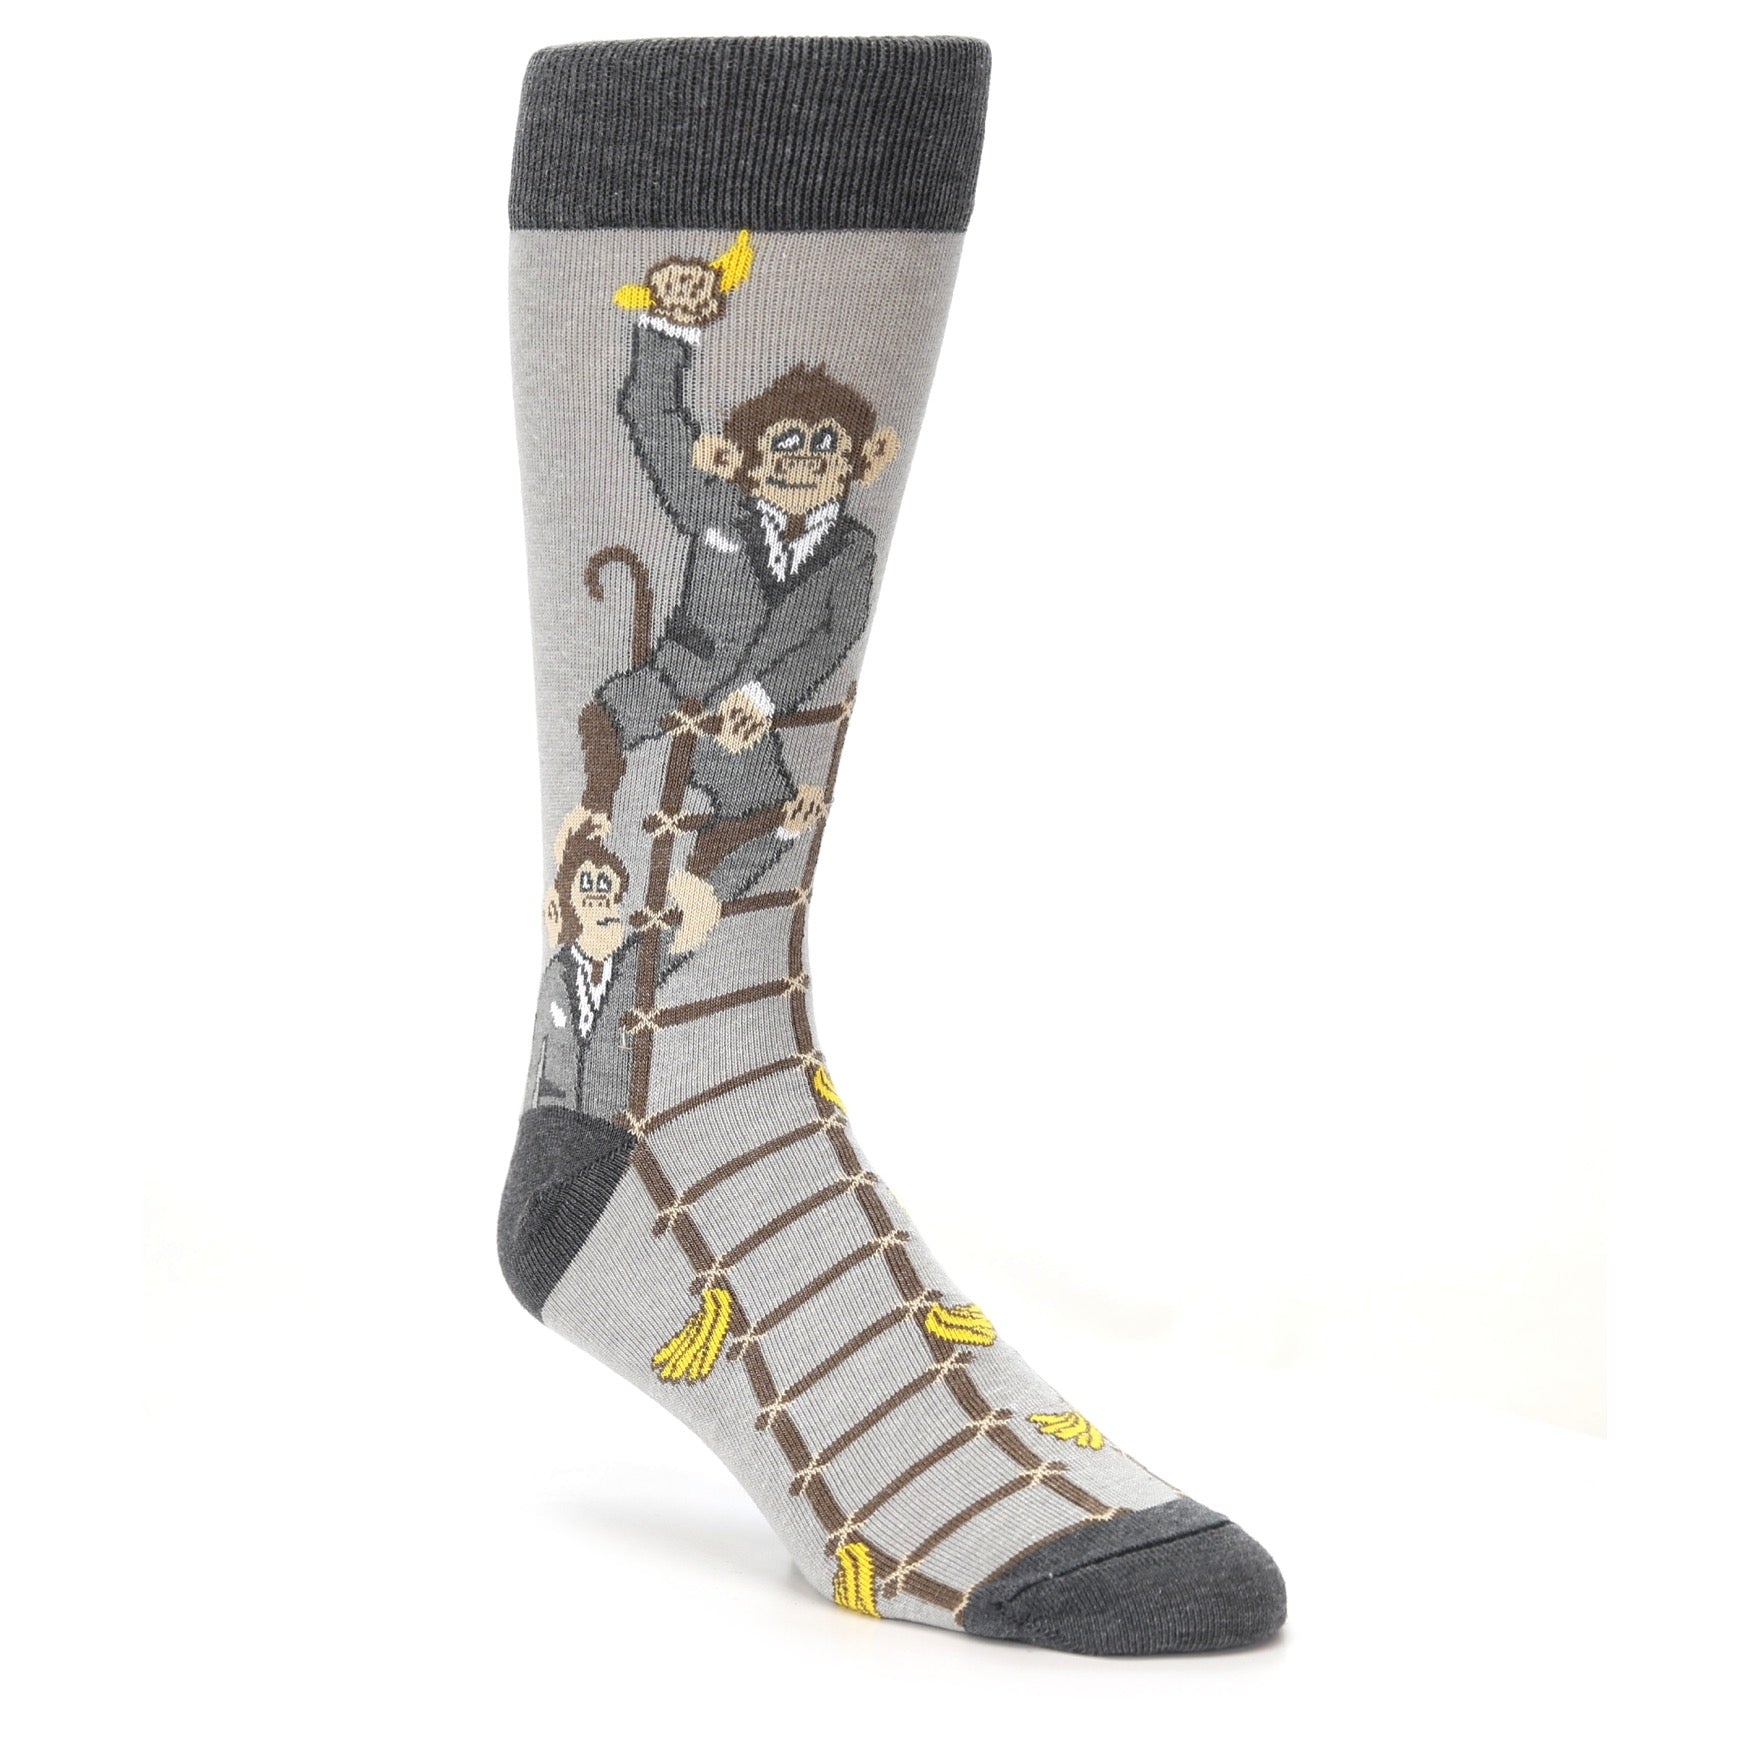 Gray Monkey Business Socks - Men's Novelty Dress Socks